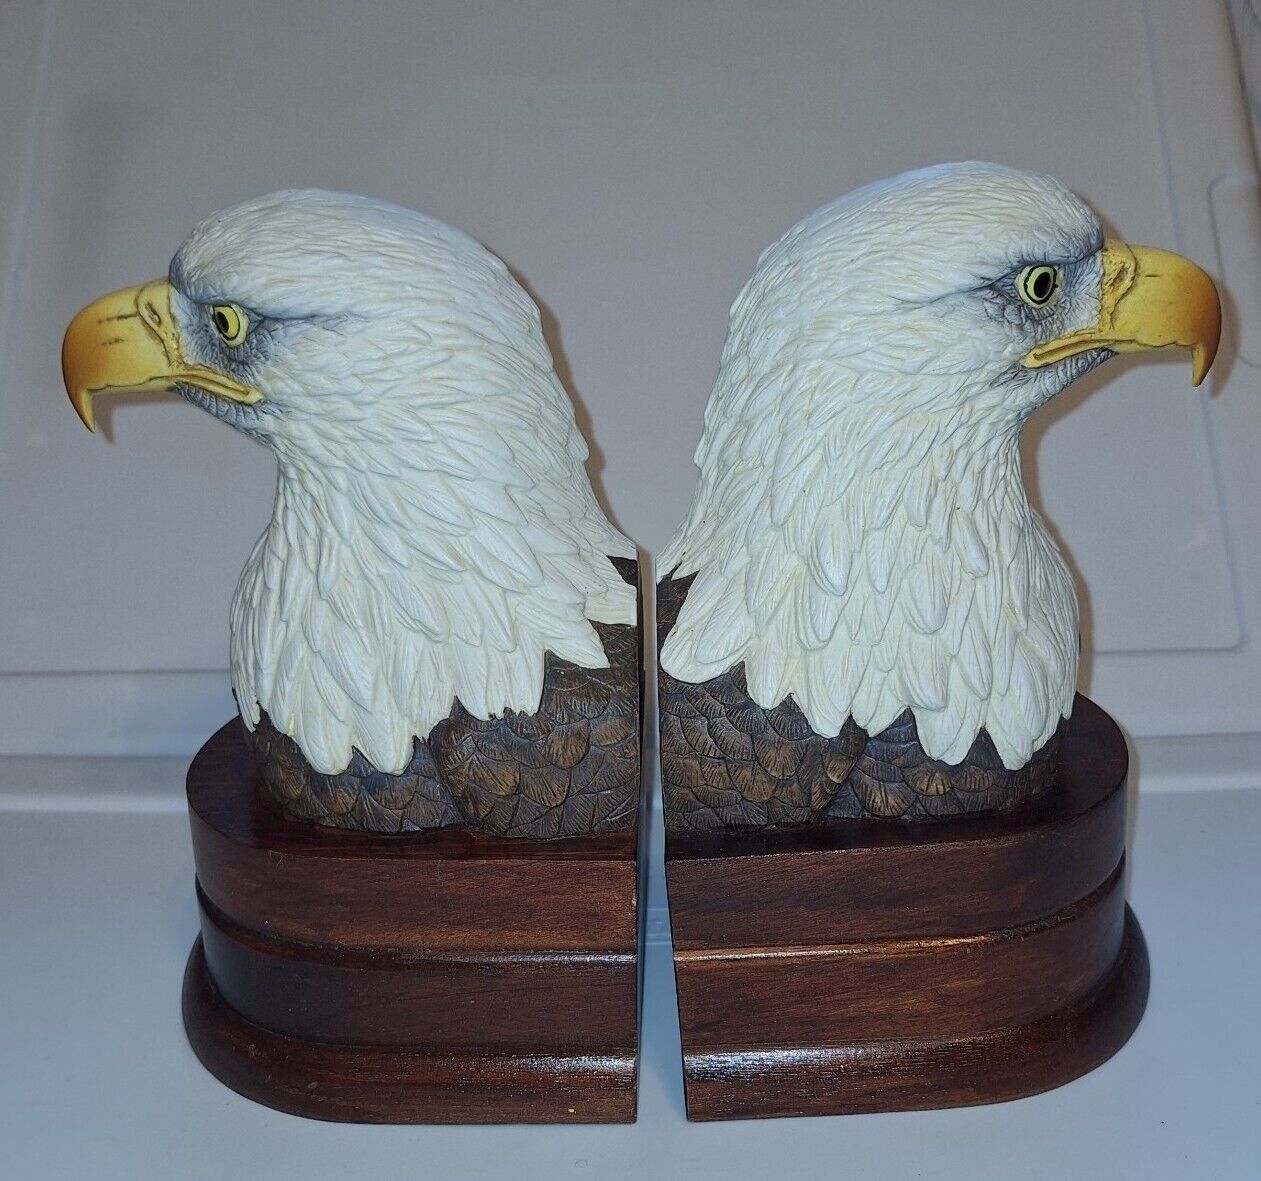 VTG Bisque Porcelain Bald Eagle Bust Bookends on Wood Bases By Andrea Sadek 